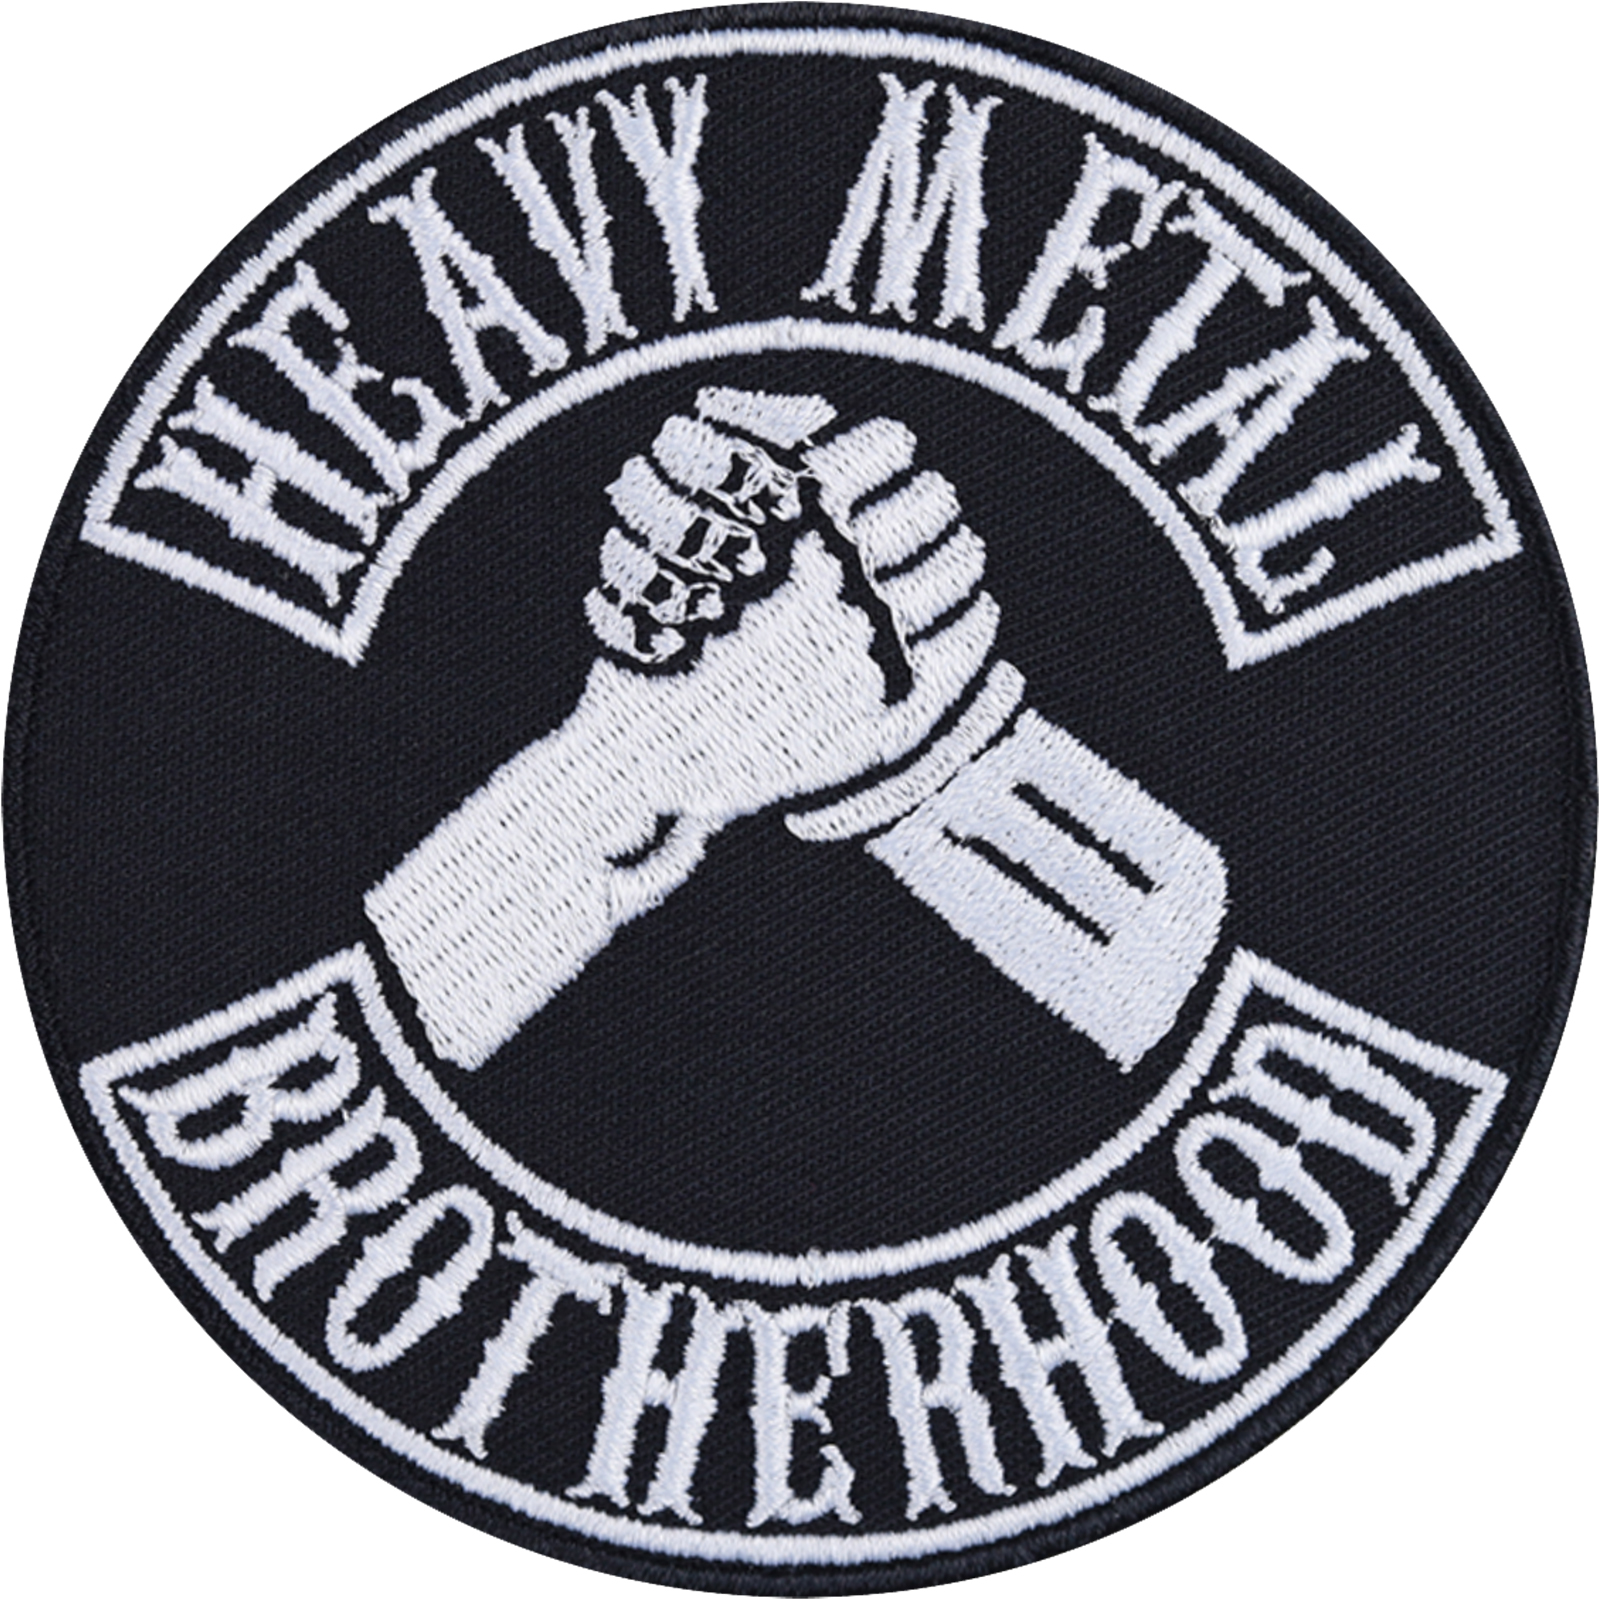 Heavy Metal Bruderschaft - Patch